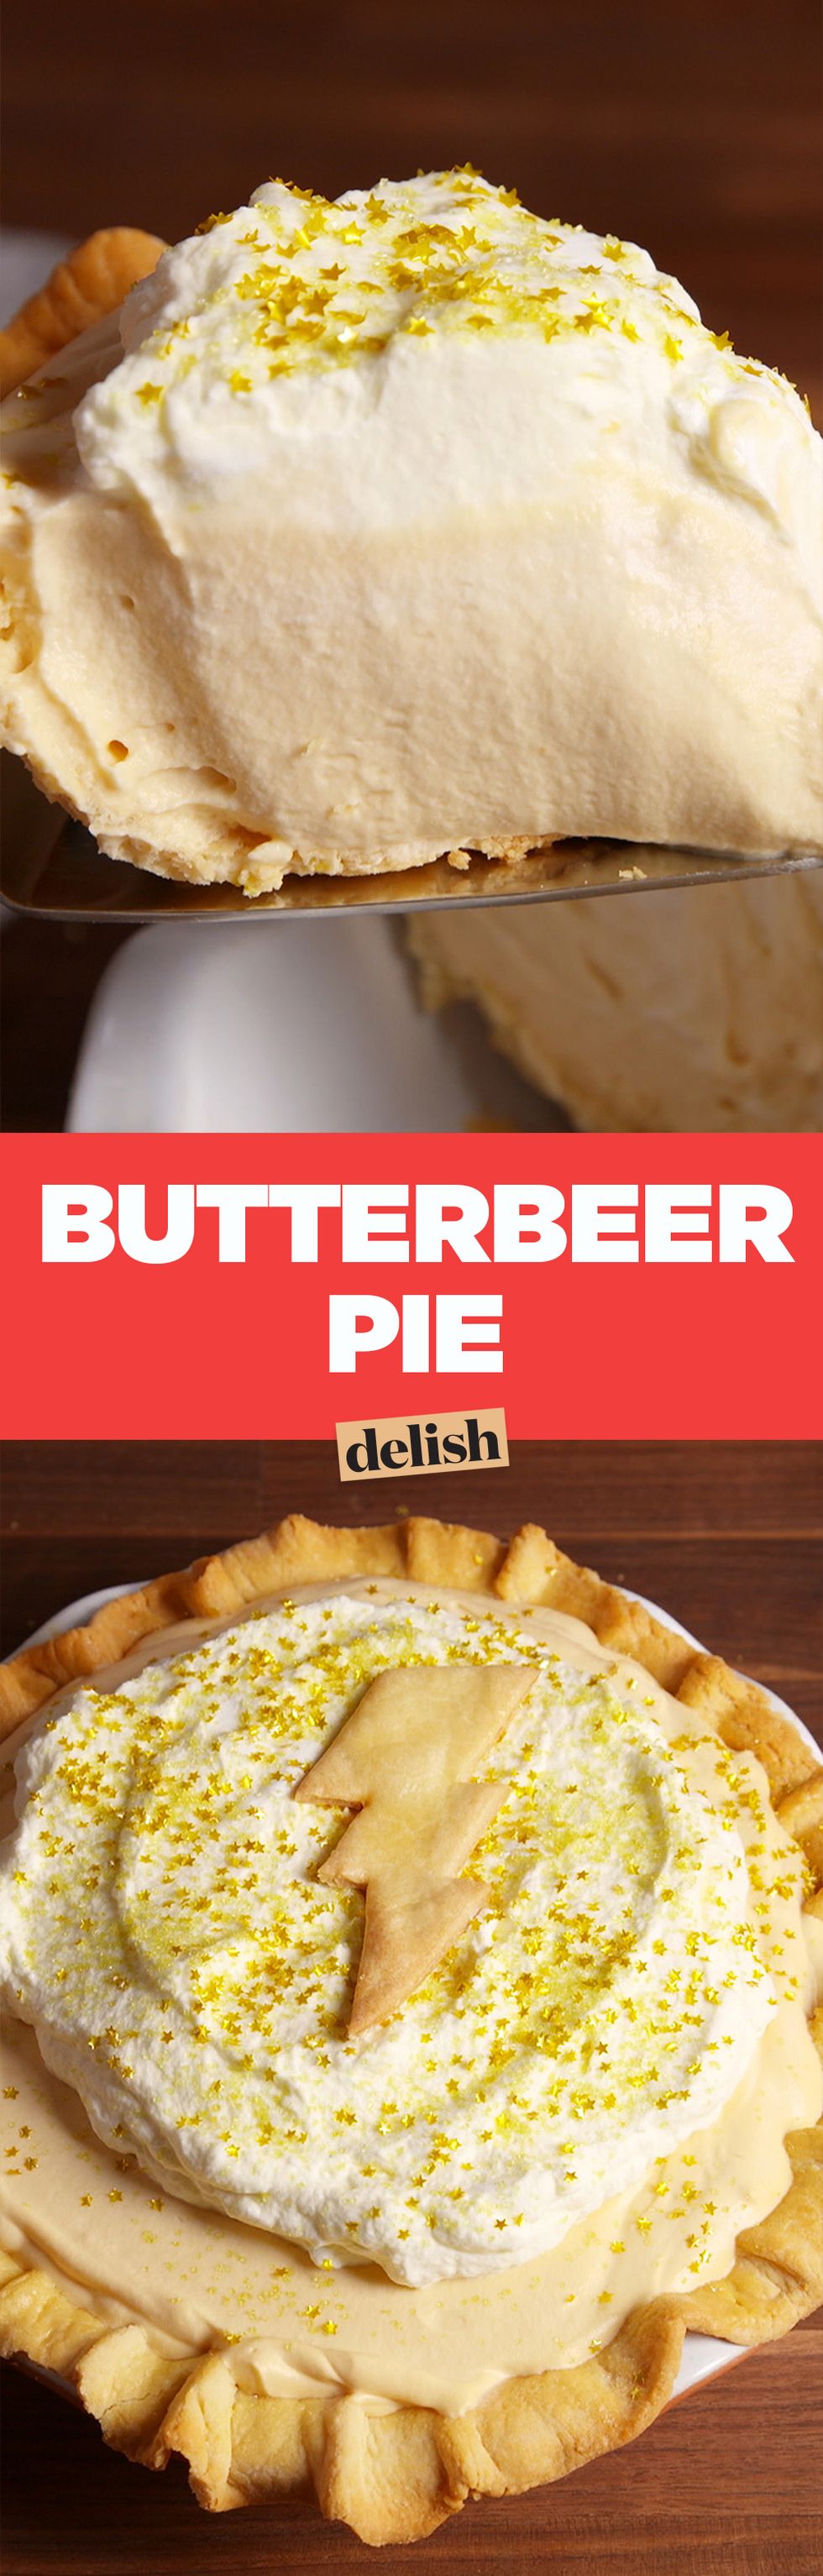 Butterbeer Pie Pinterest